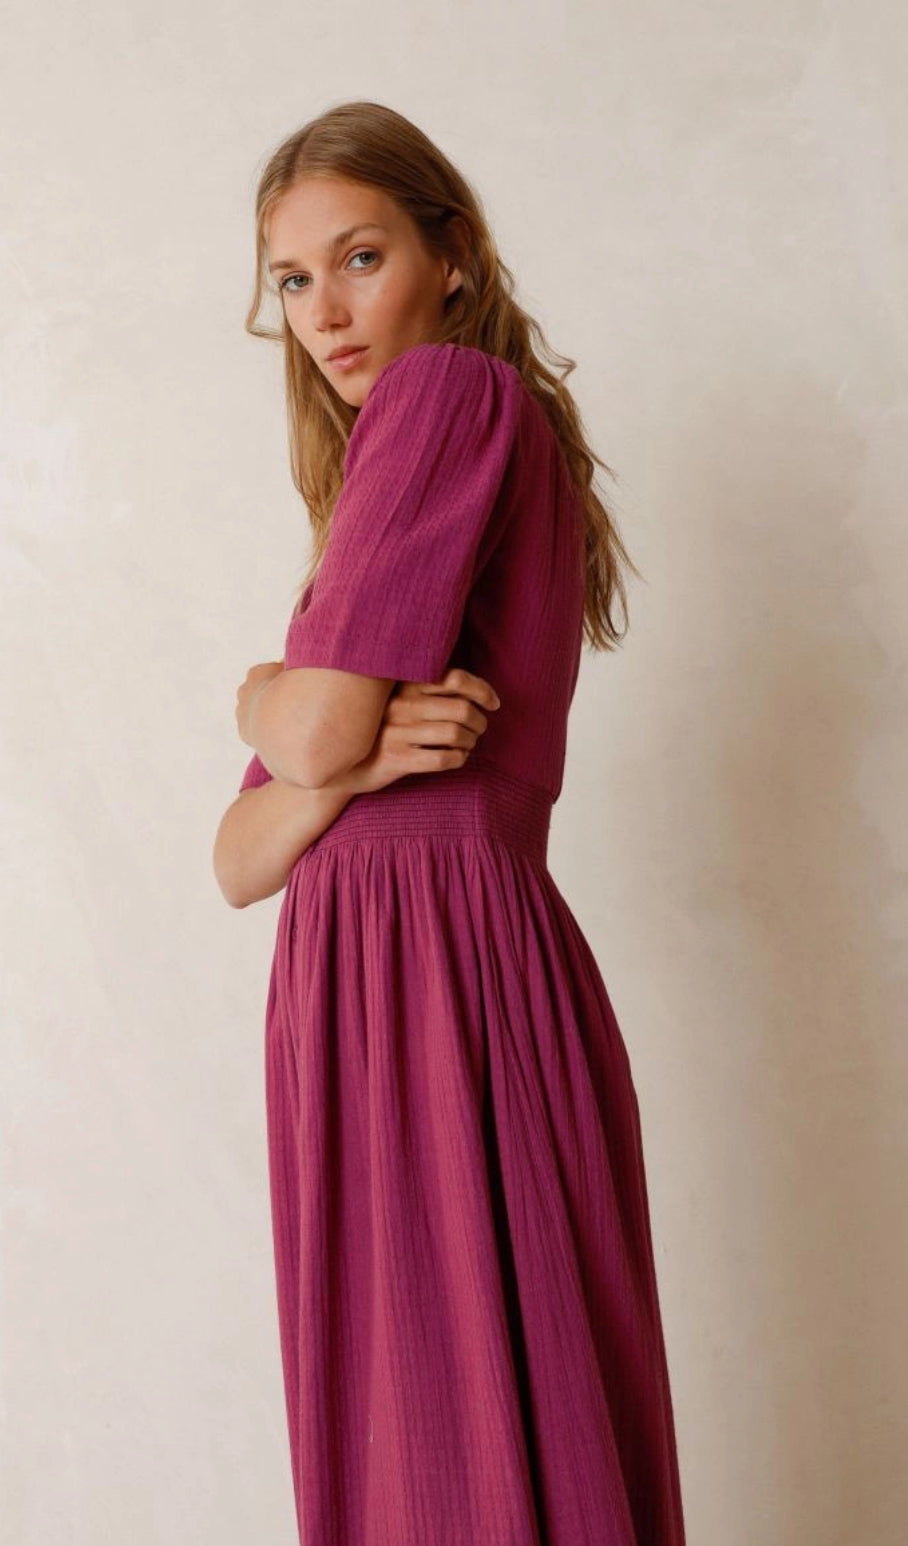 Romantic Violet Dress